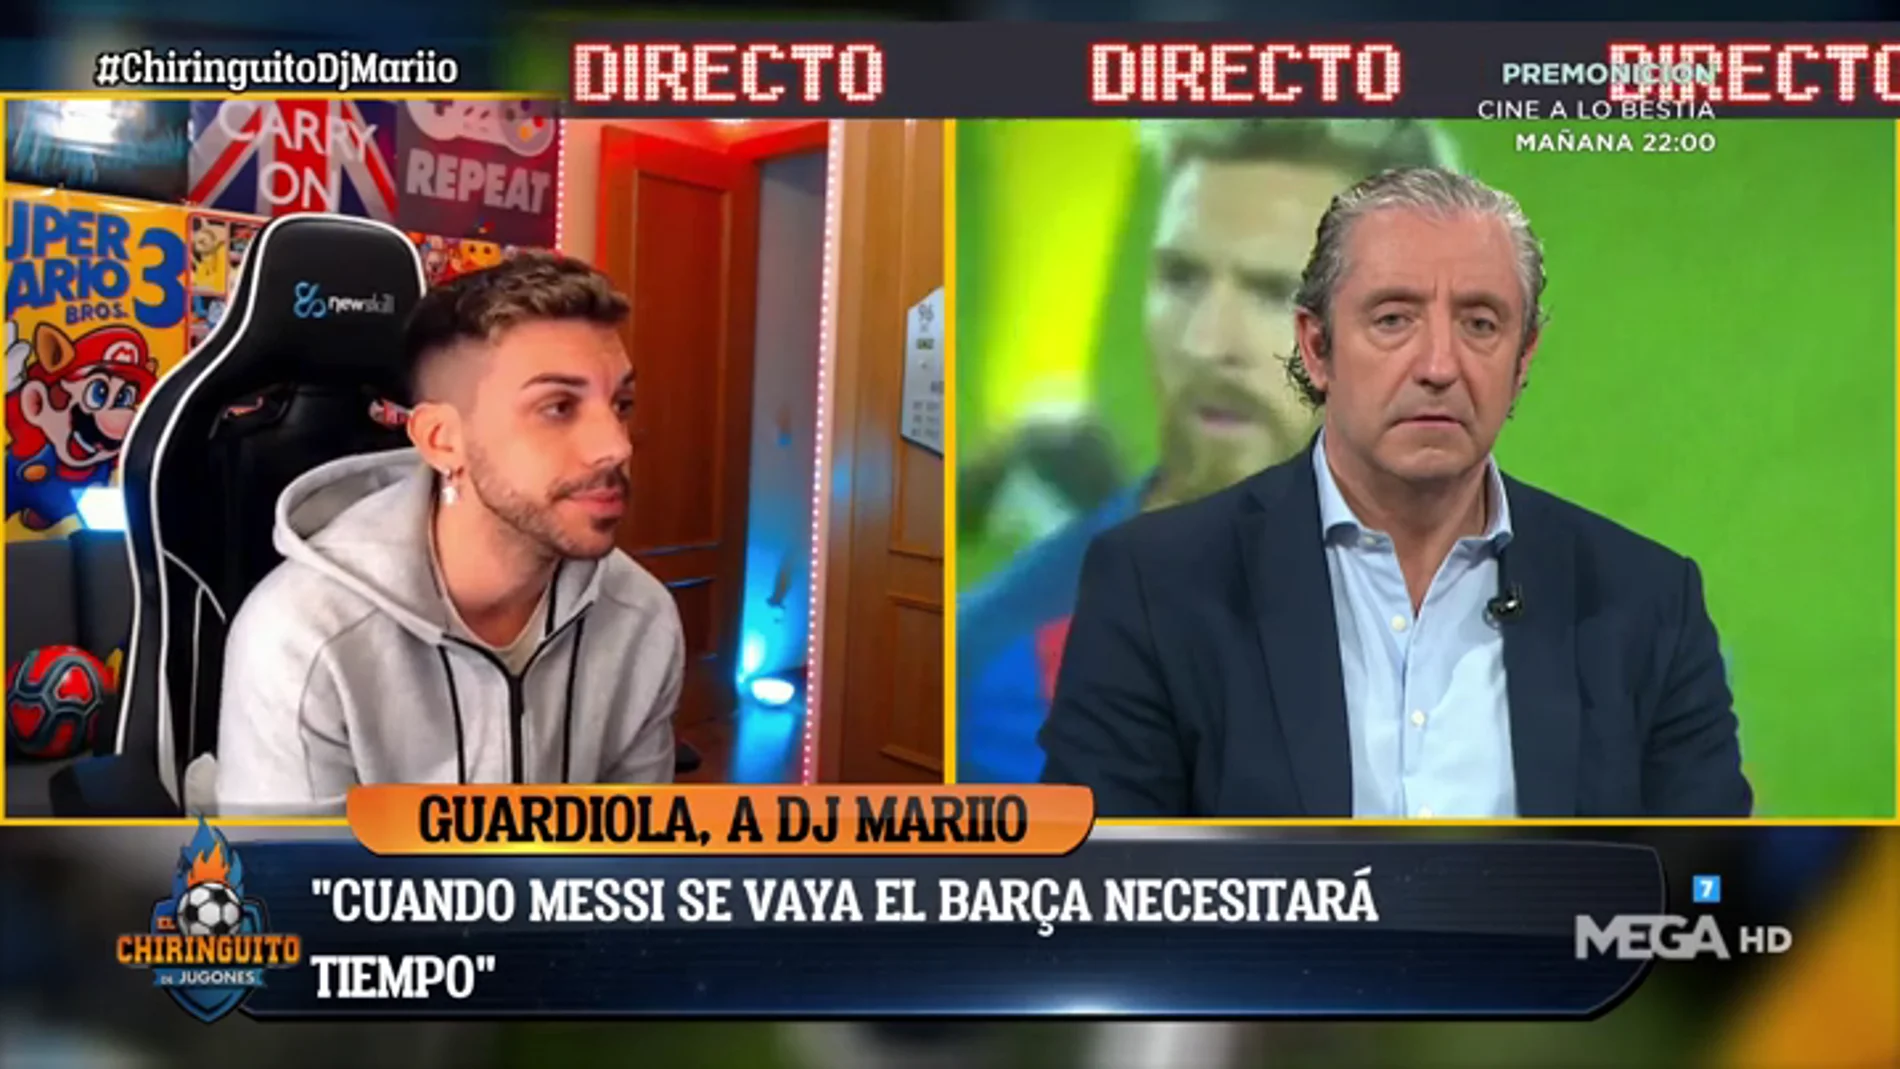 El youtuber DjMariio comenta su entrevista a Pep Guardiola en El Chiringuito